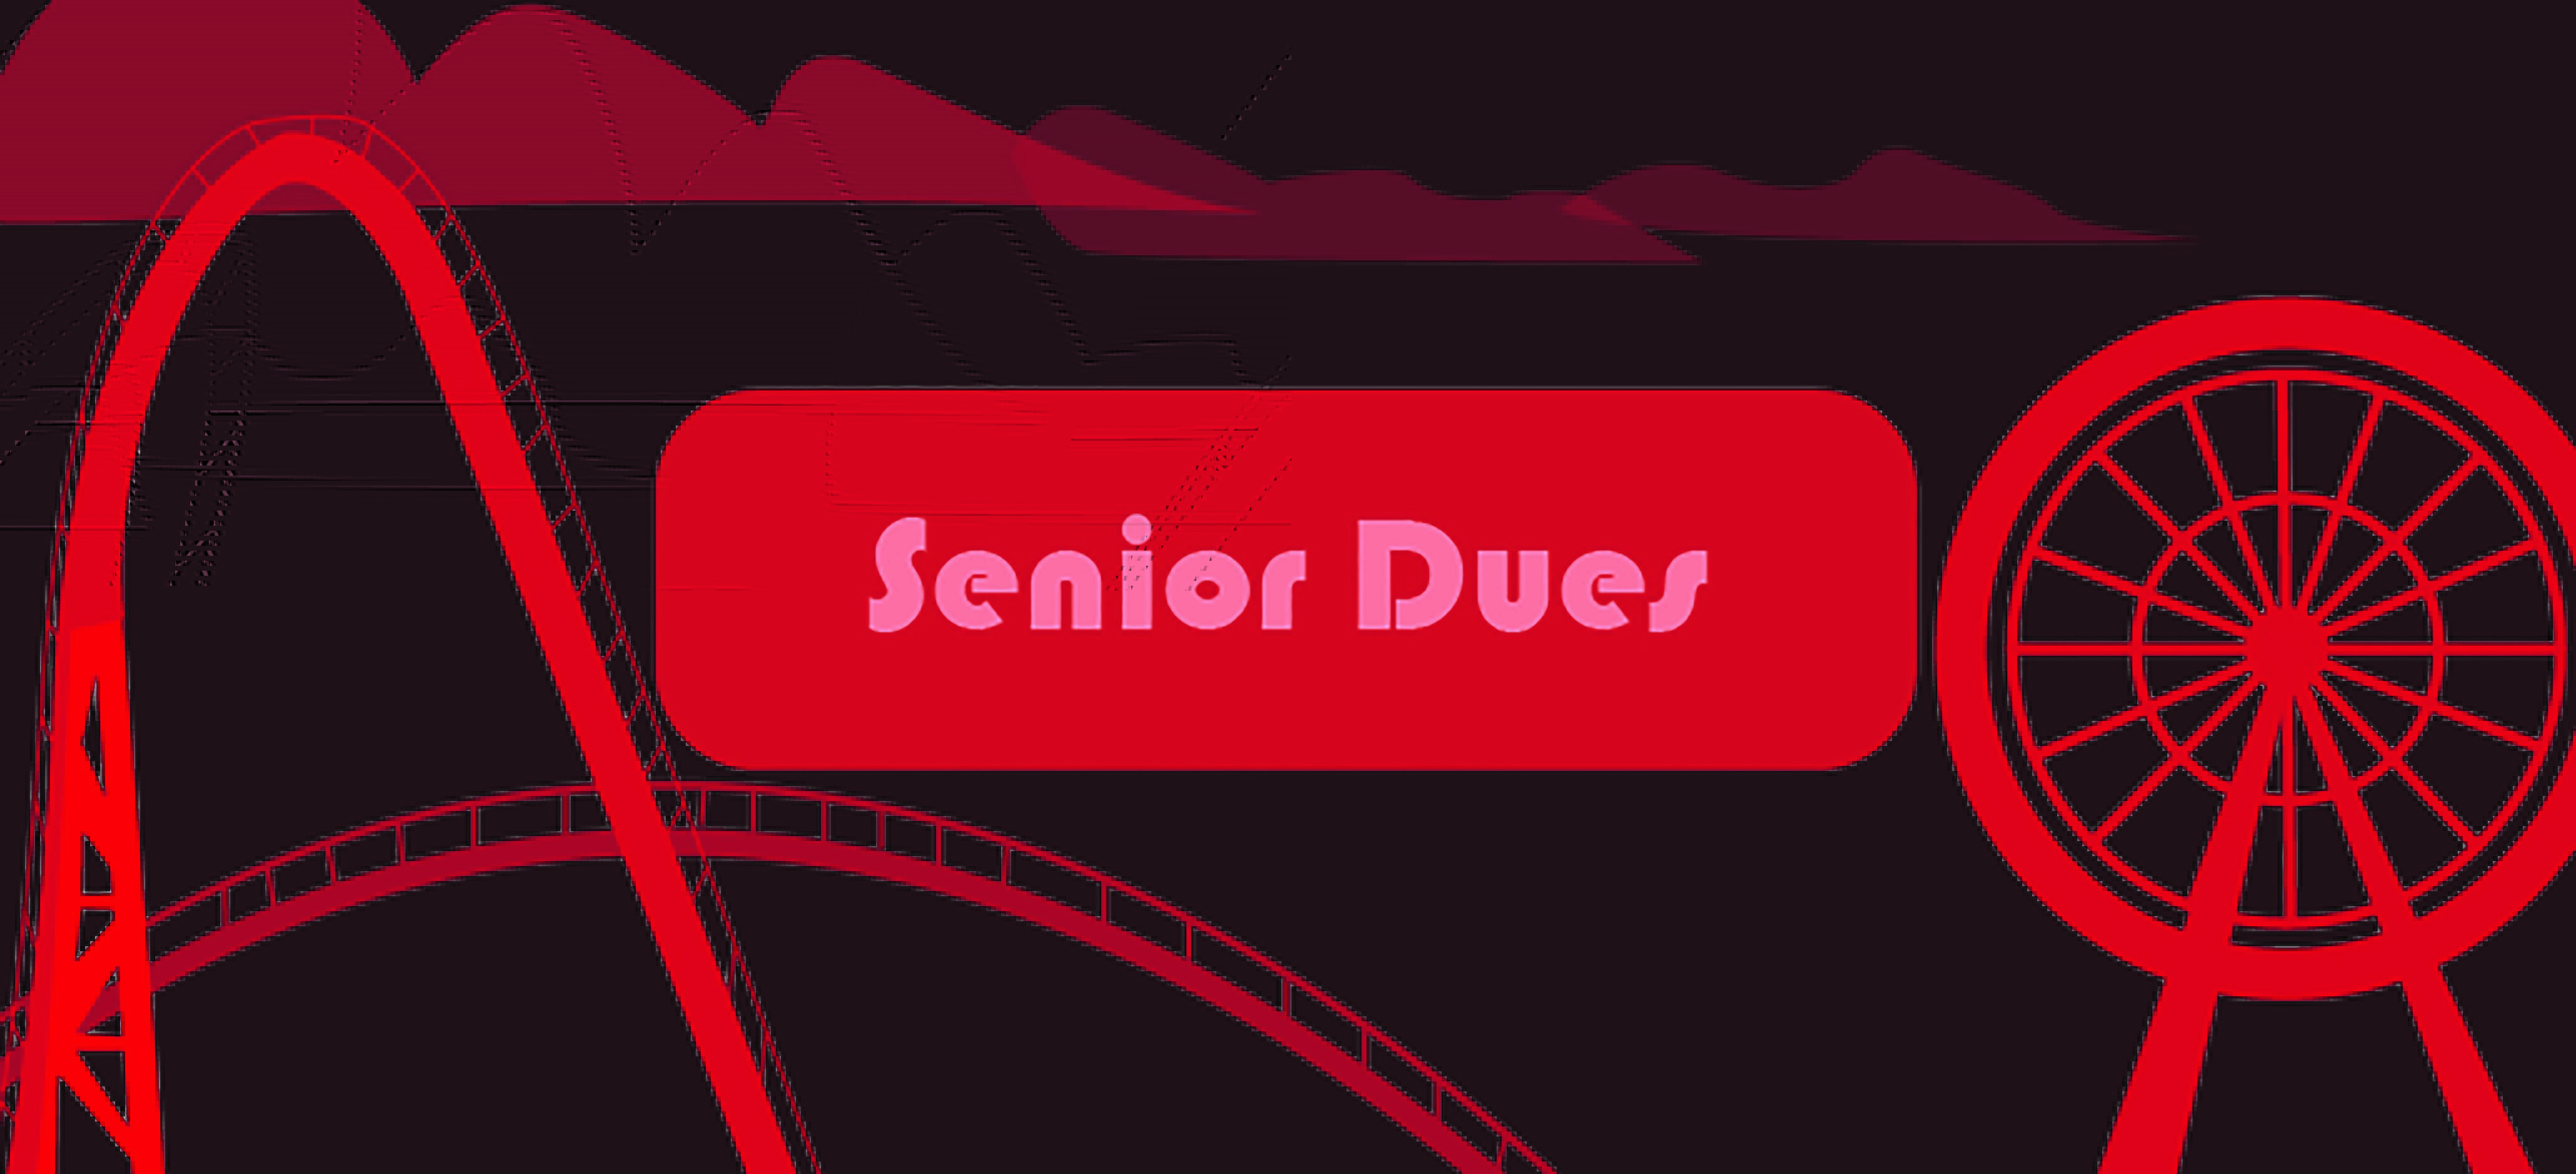 Senior Dues